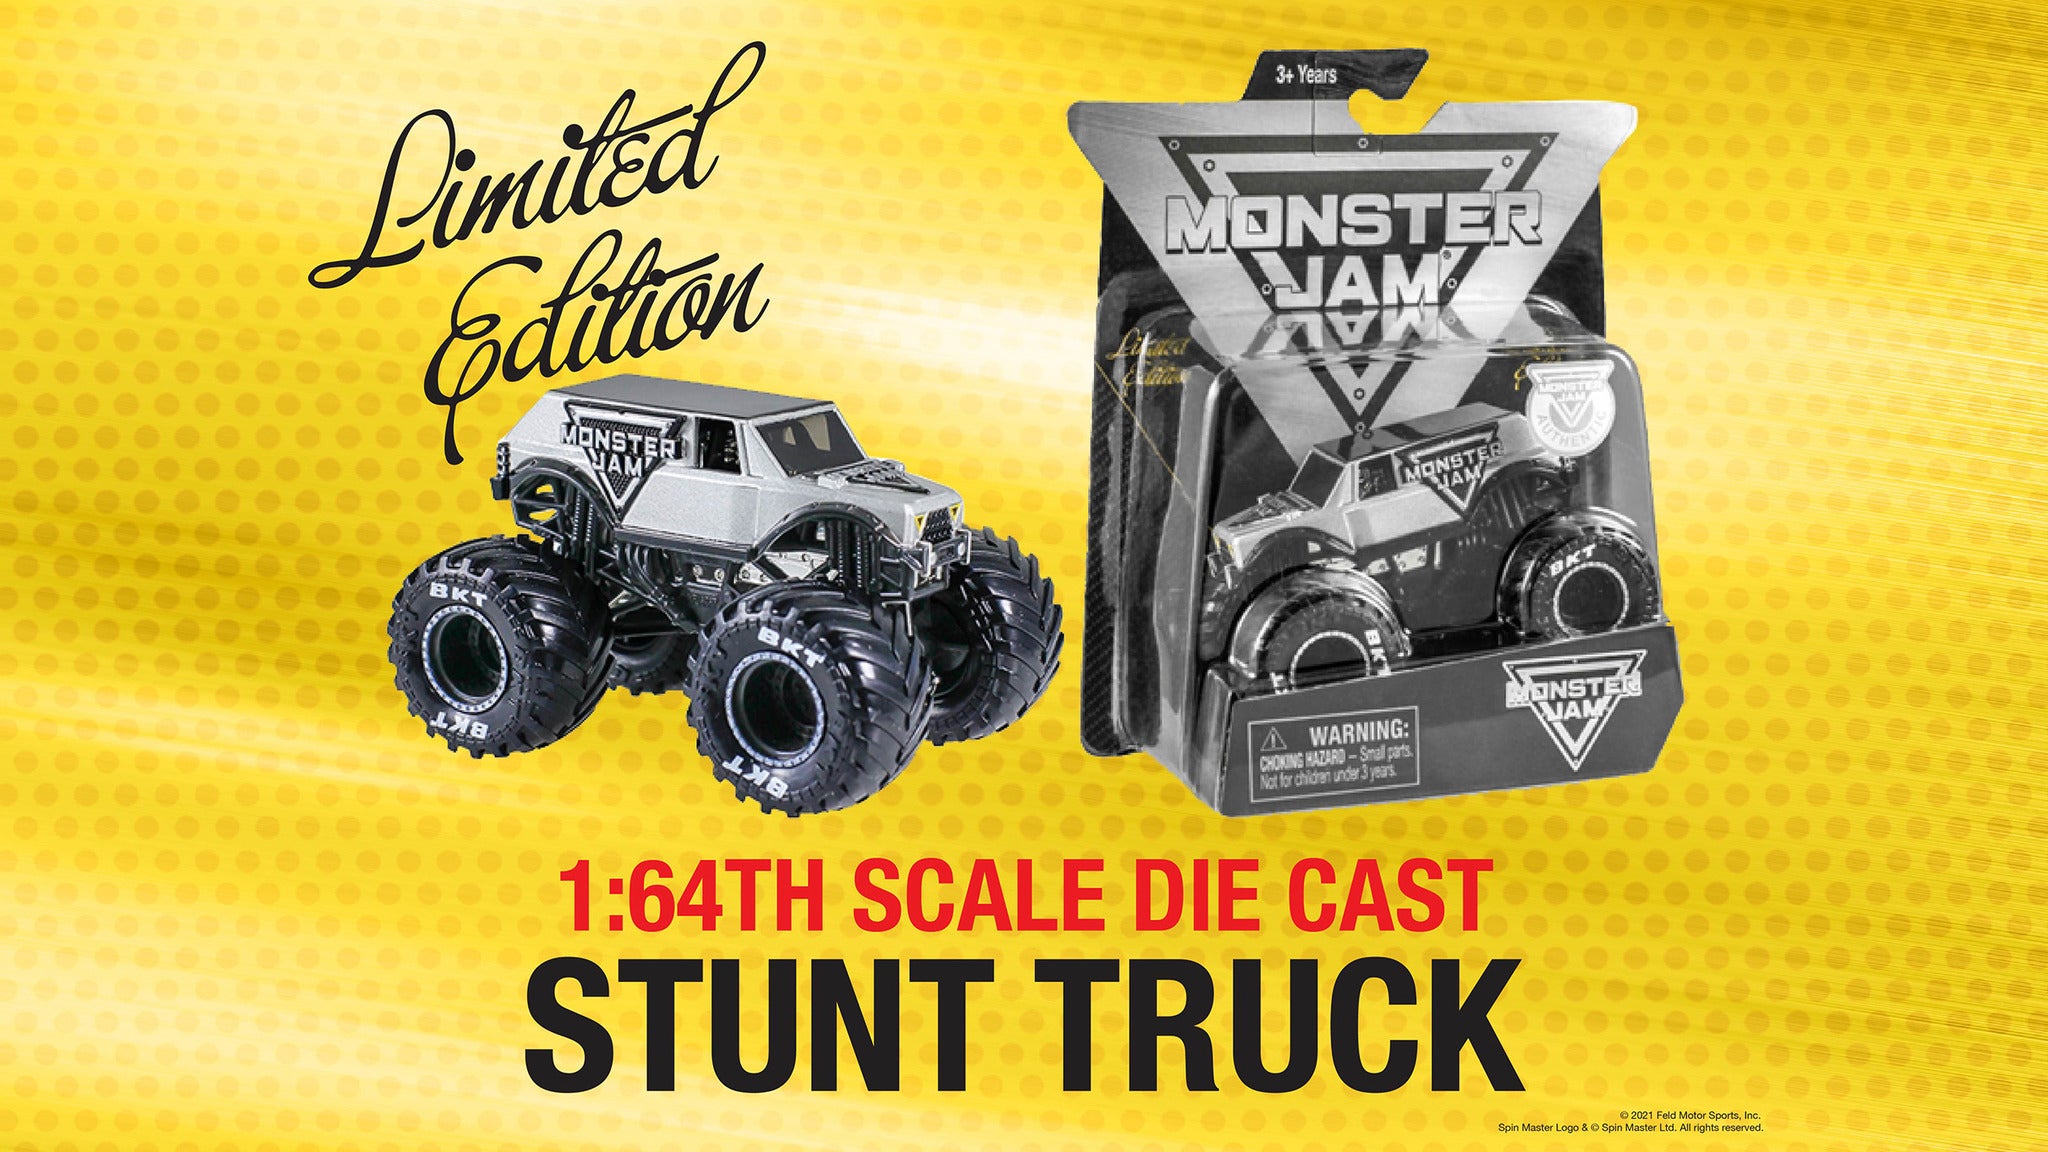 presale code for Monster Jam â 1/64th Scale Stunt Truck tickets in Washington - DC (Capital One Arena)